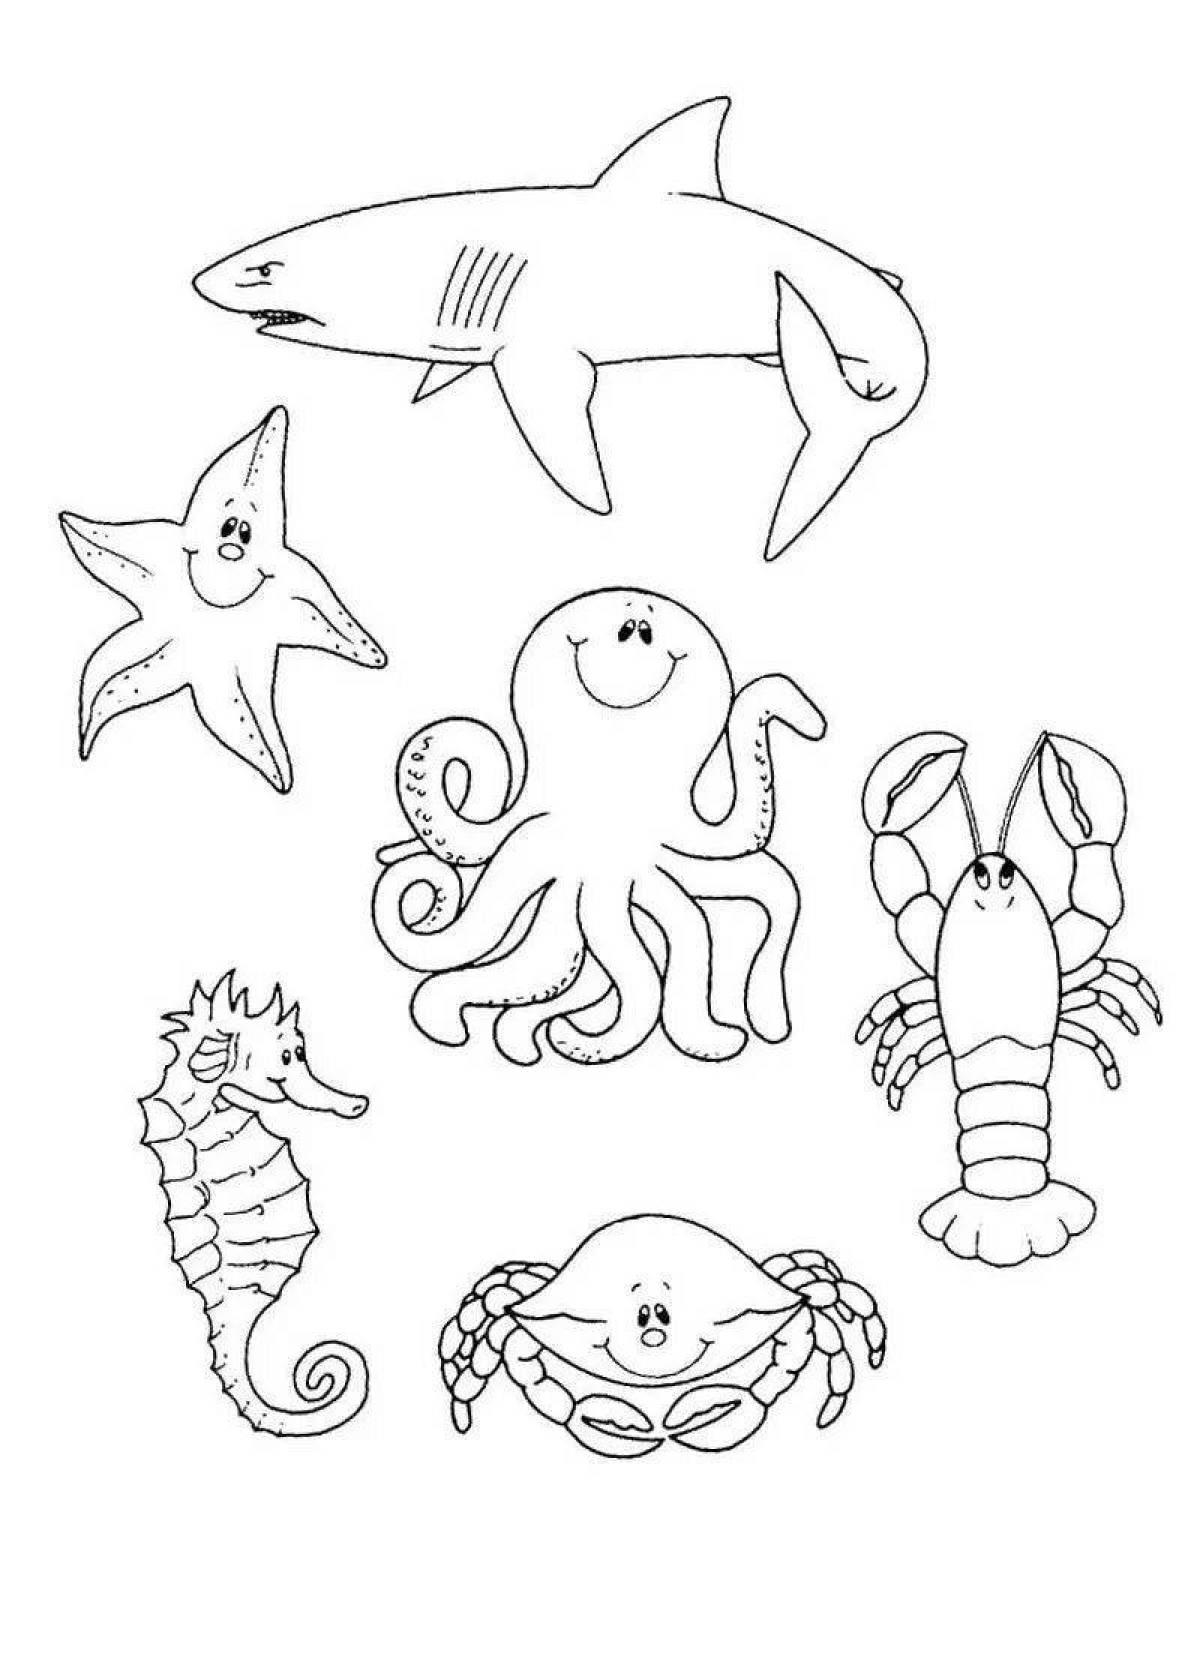 Развлекательная раскраска морских животных для детей